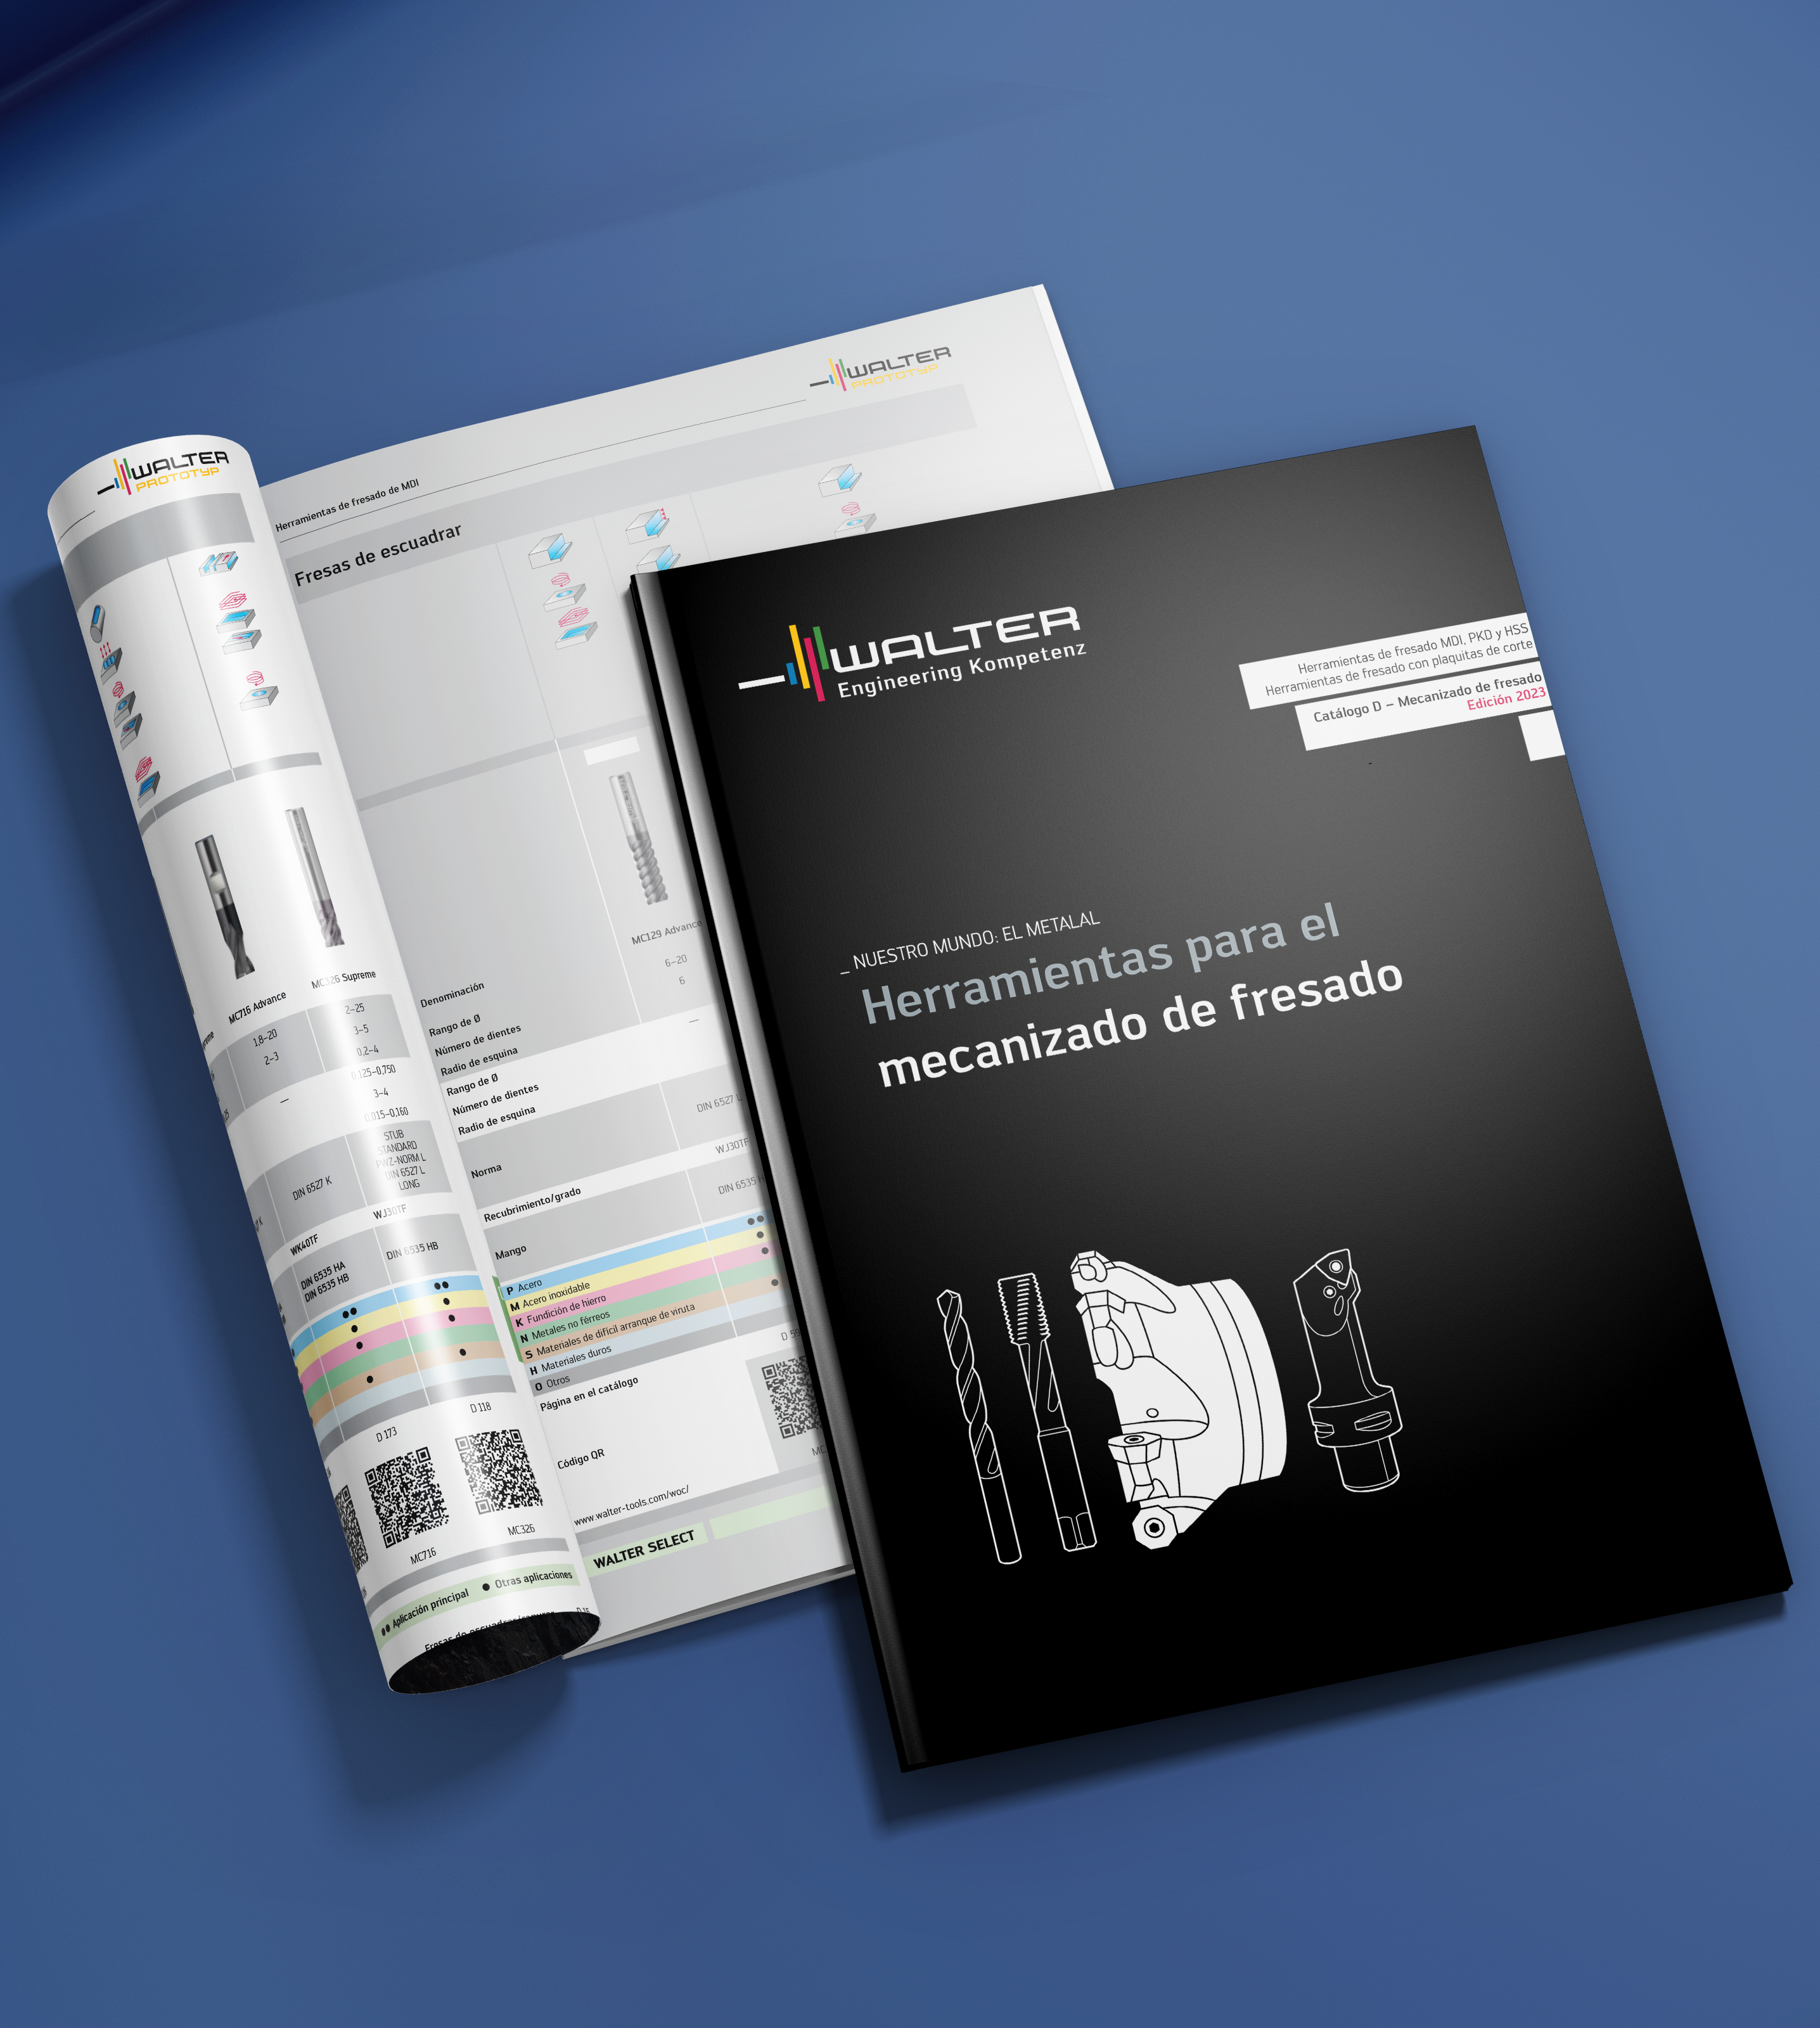 Catálogos intertools - Walter_Herramientas para el mecanizado de fresado